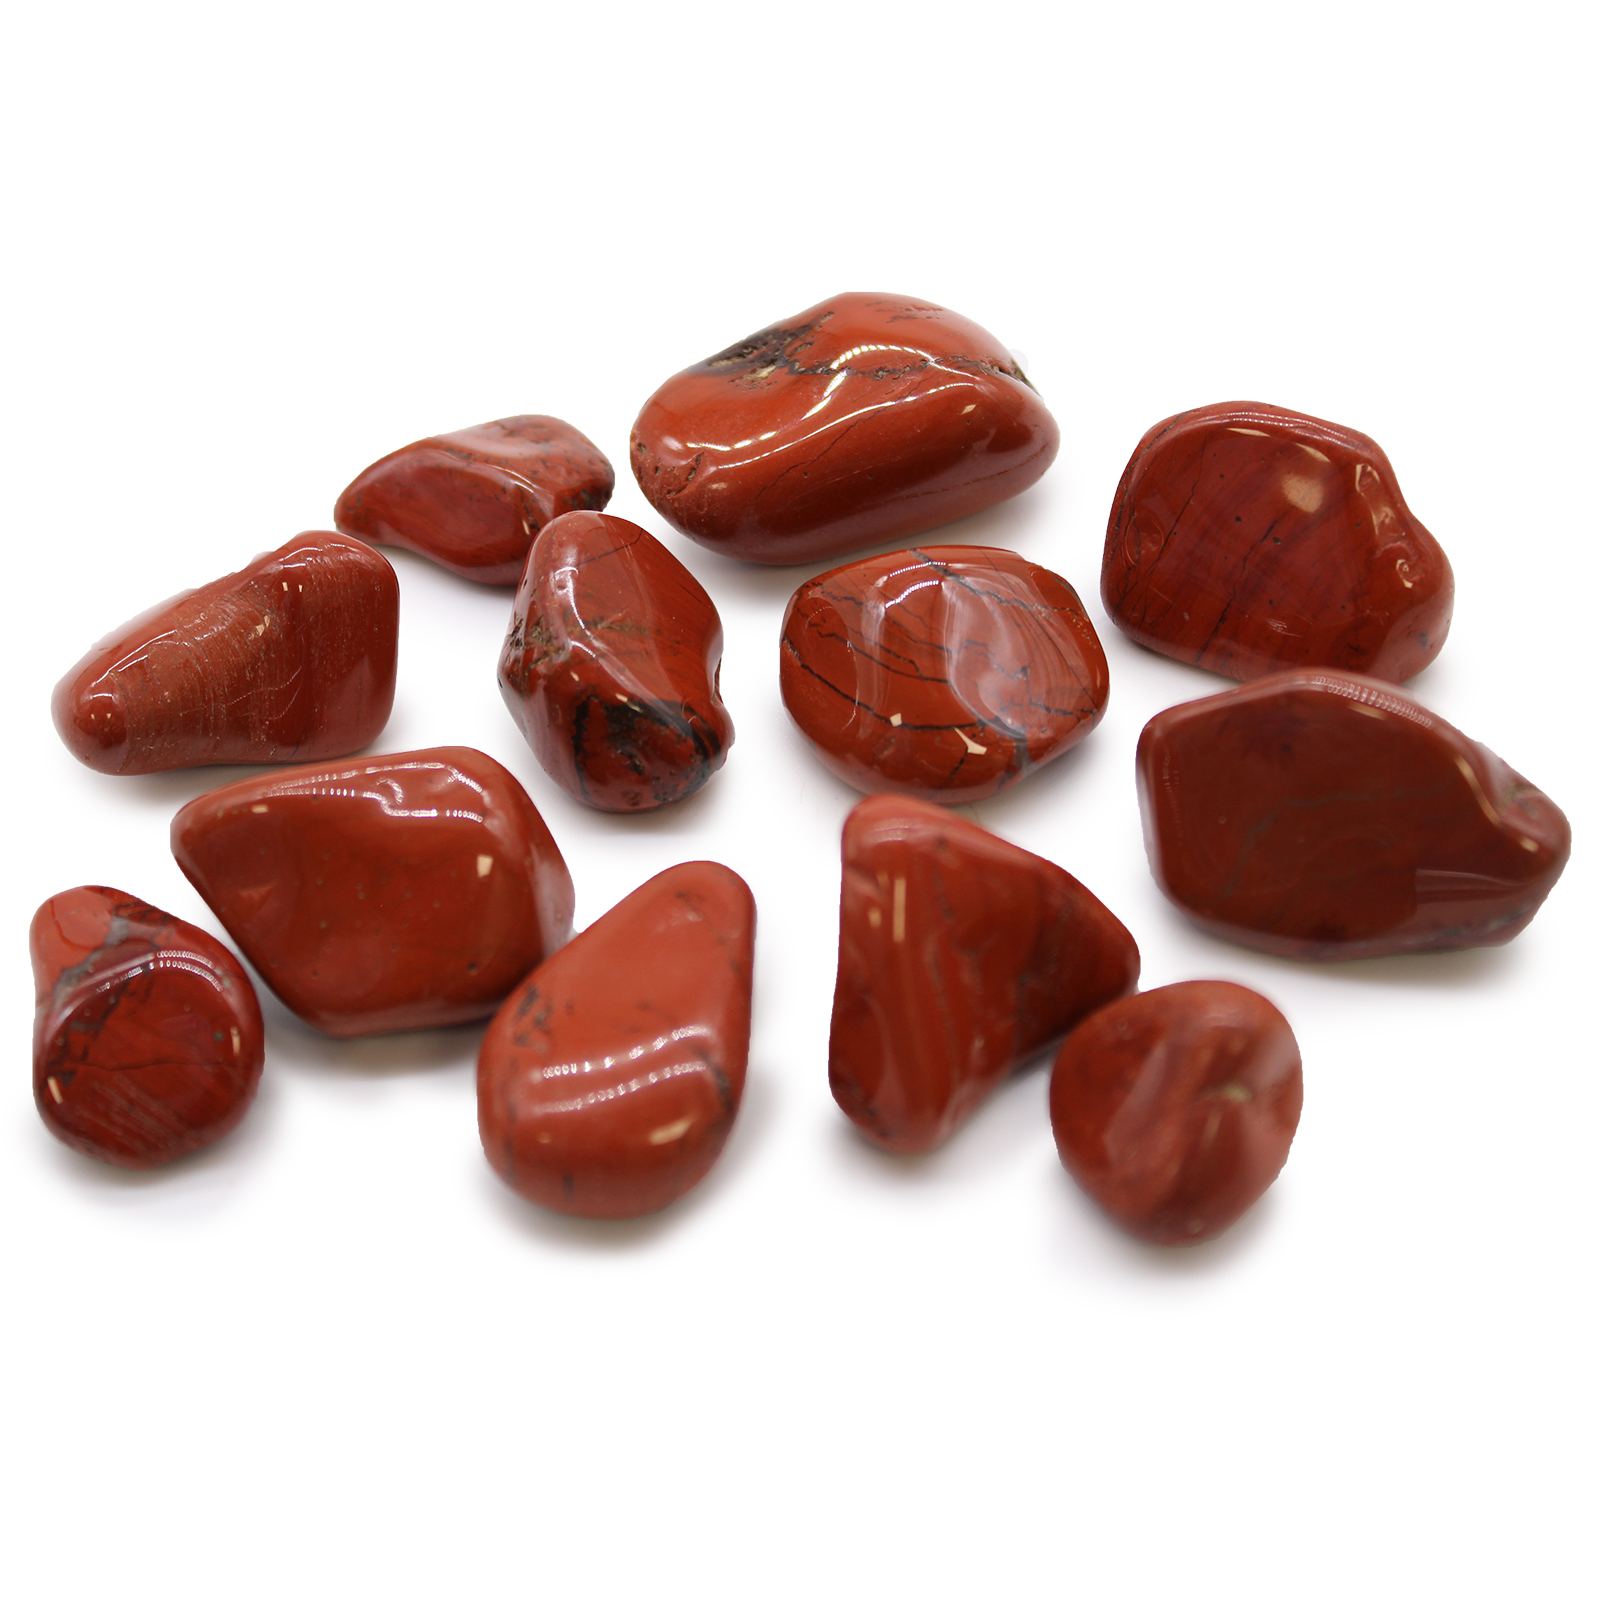 12 x Medium African Tumble Stones - Jasper - Red